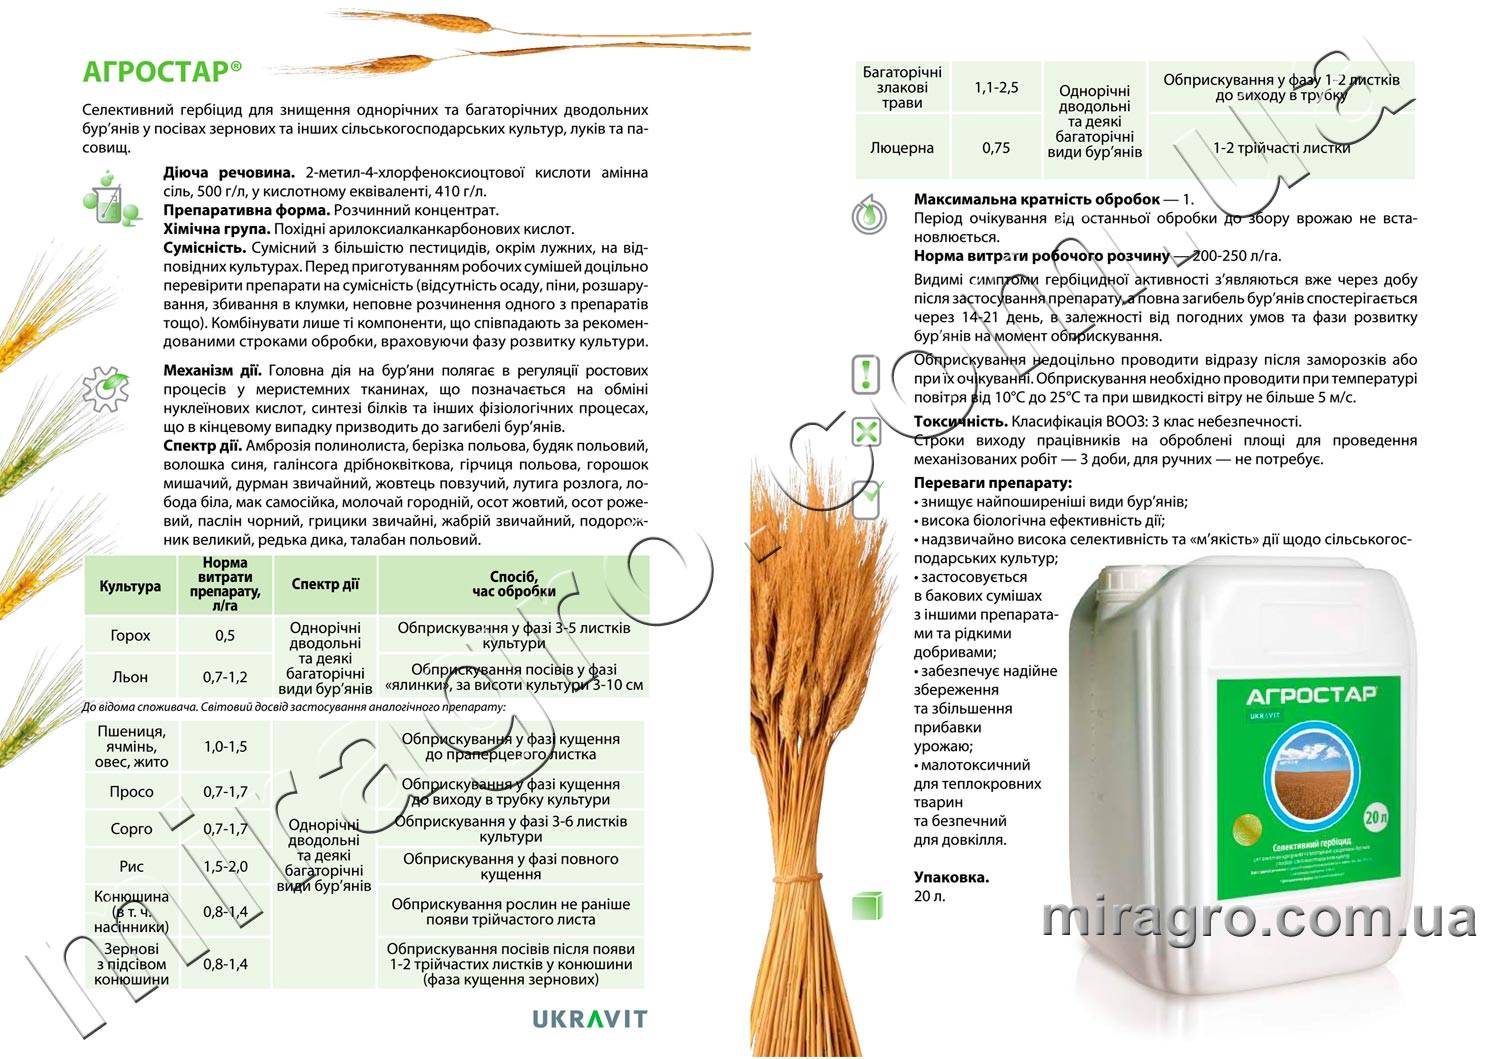 Инструкция по применению препарата стомп для борьбы с сорняками, отзывы об эффективности гербицида